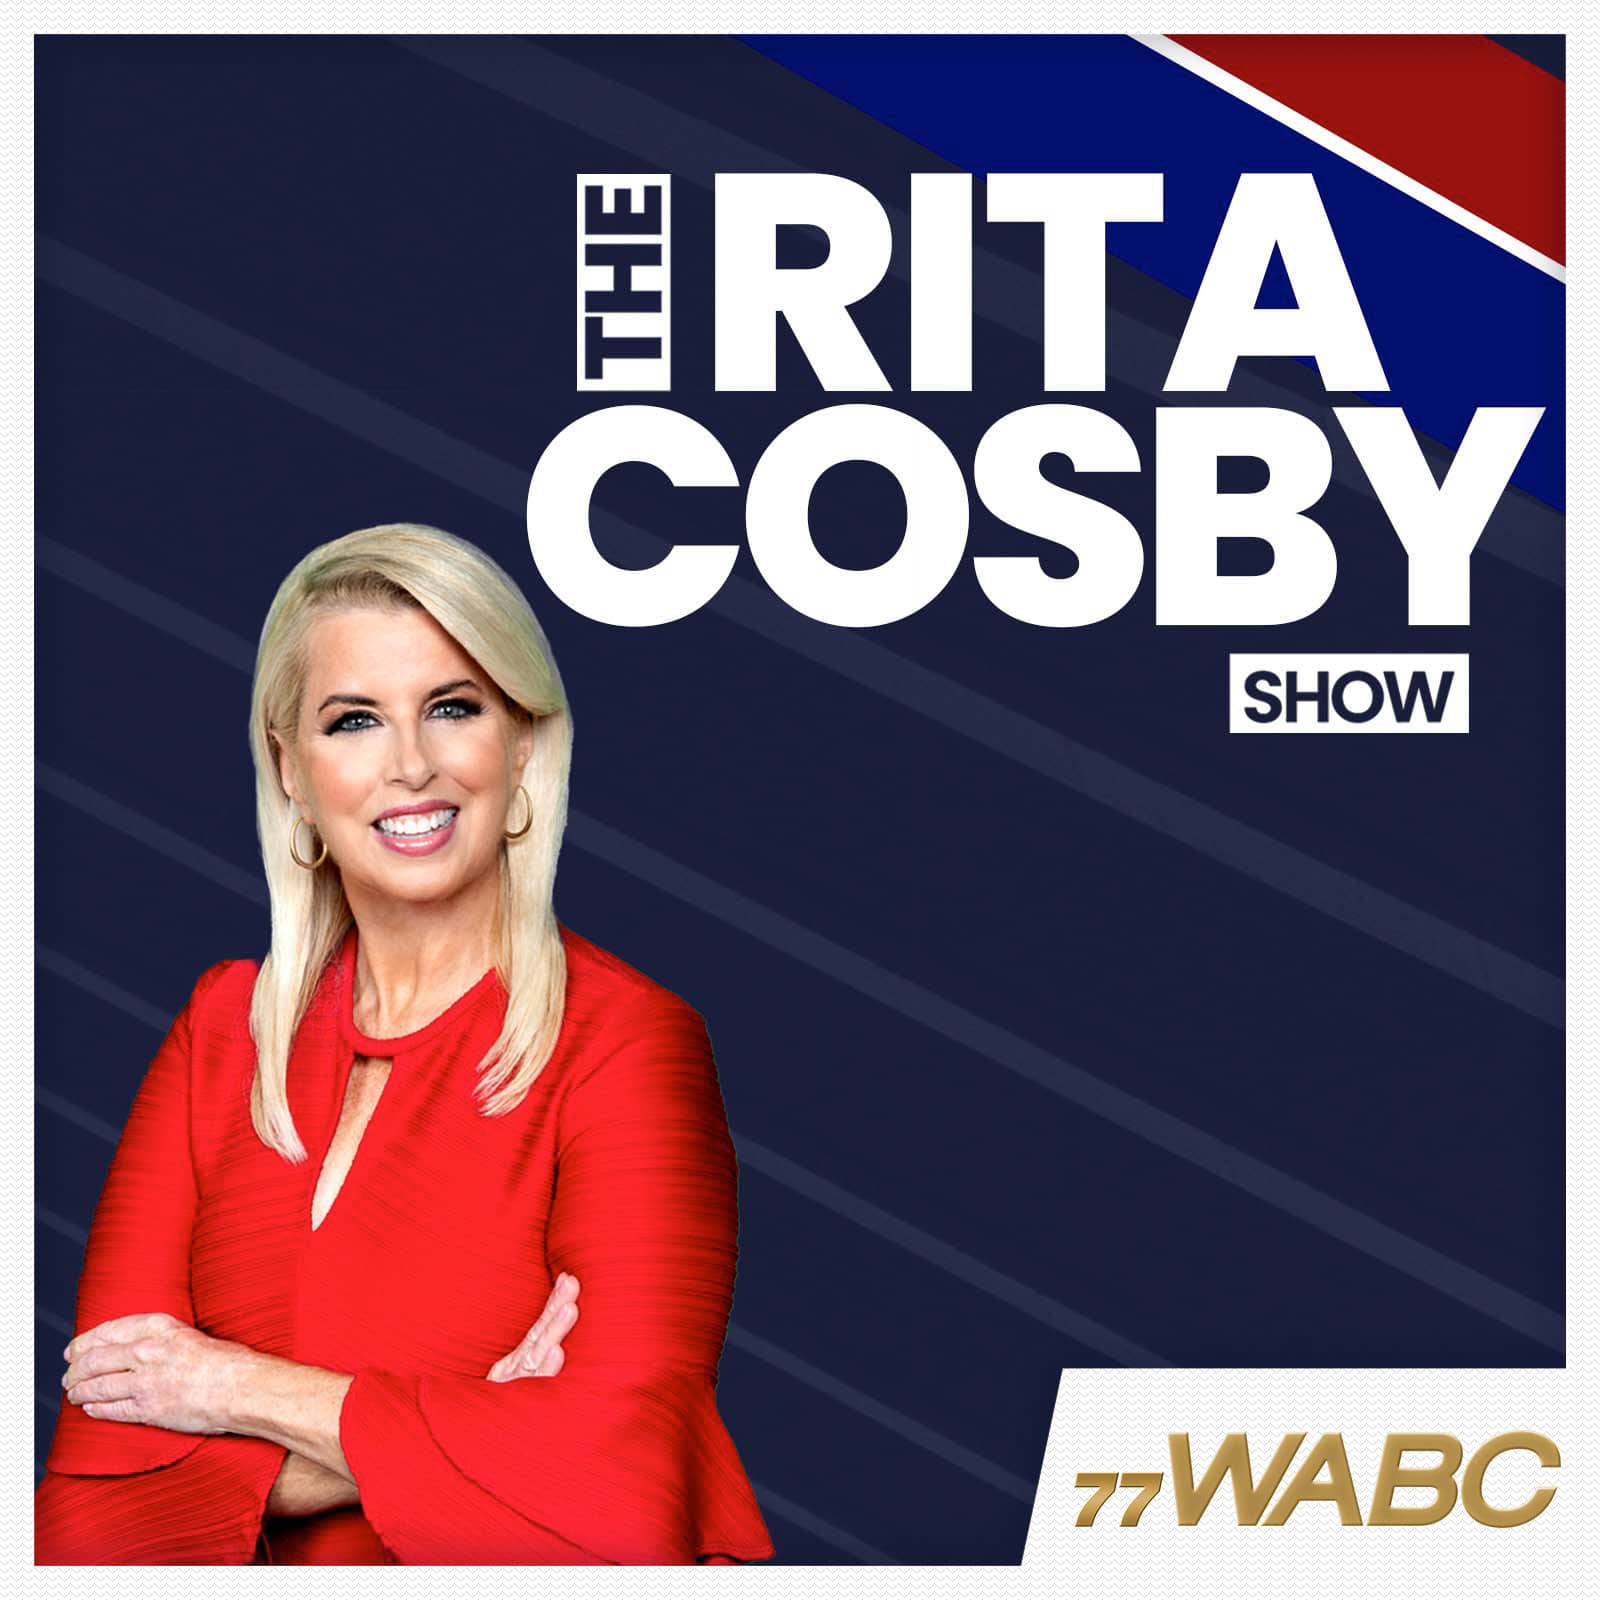 rita-cosby-podcast-new-logo-253